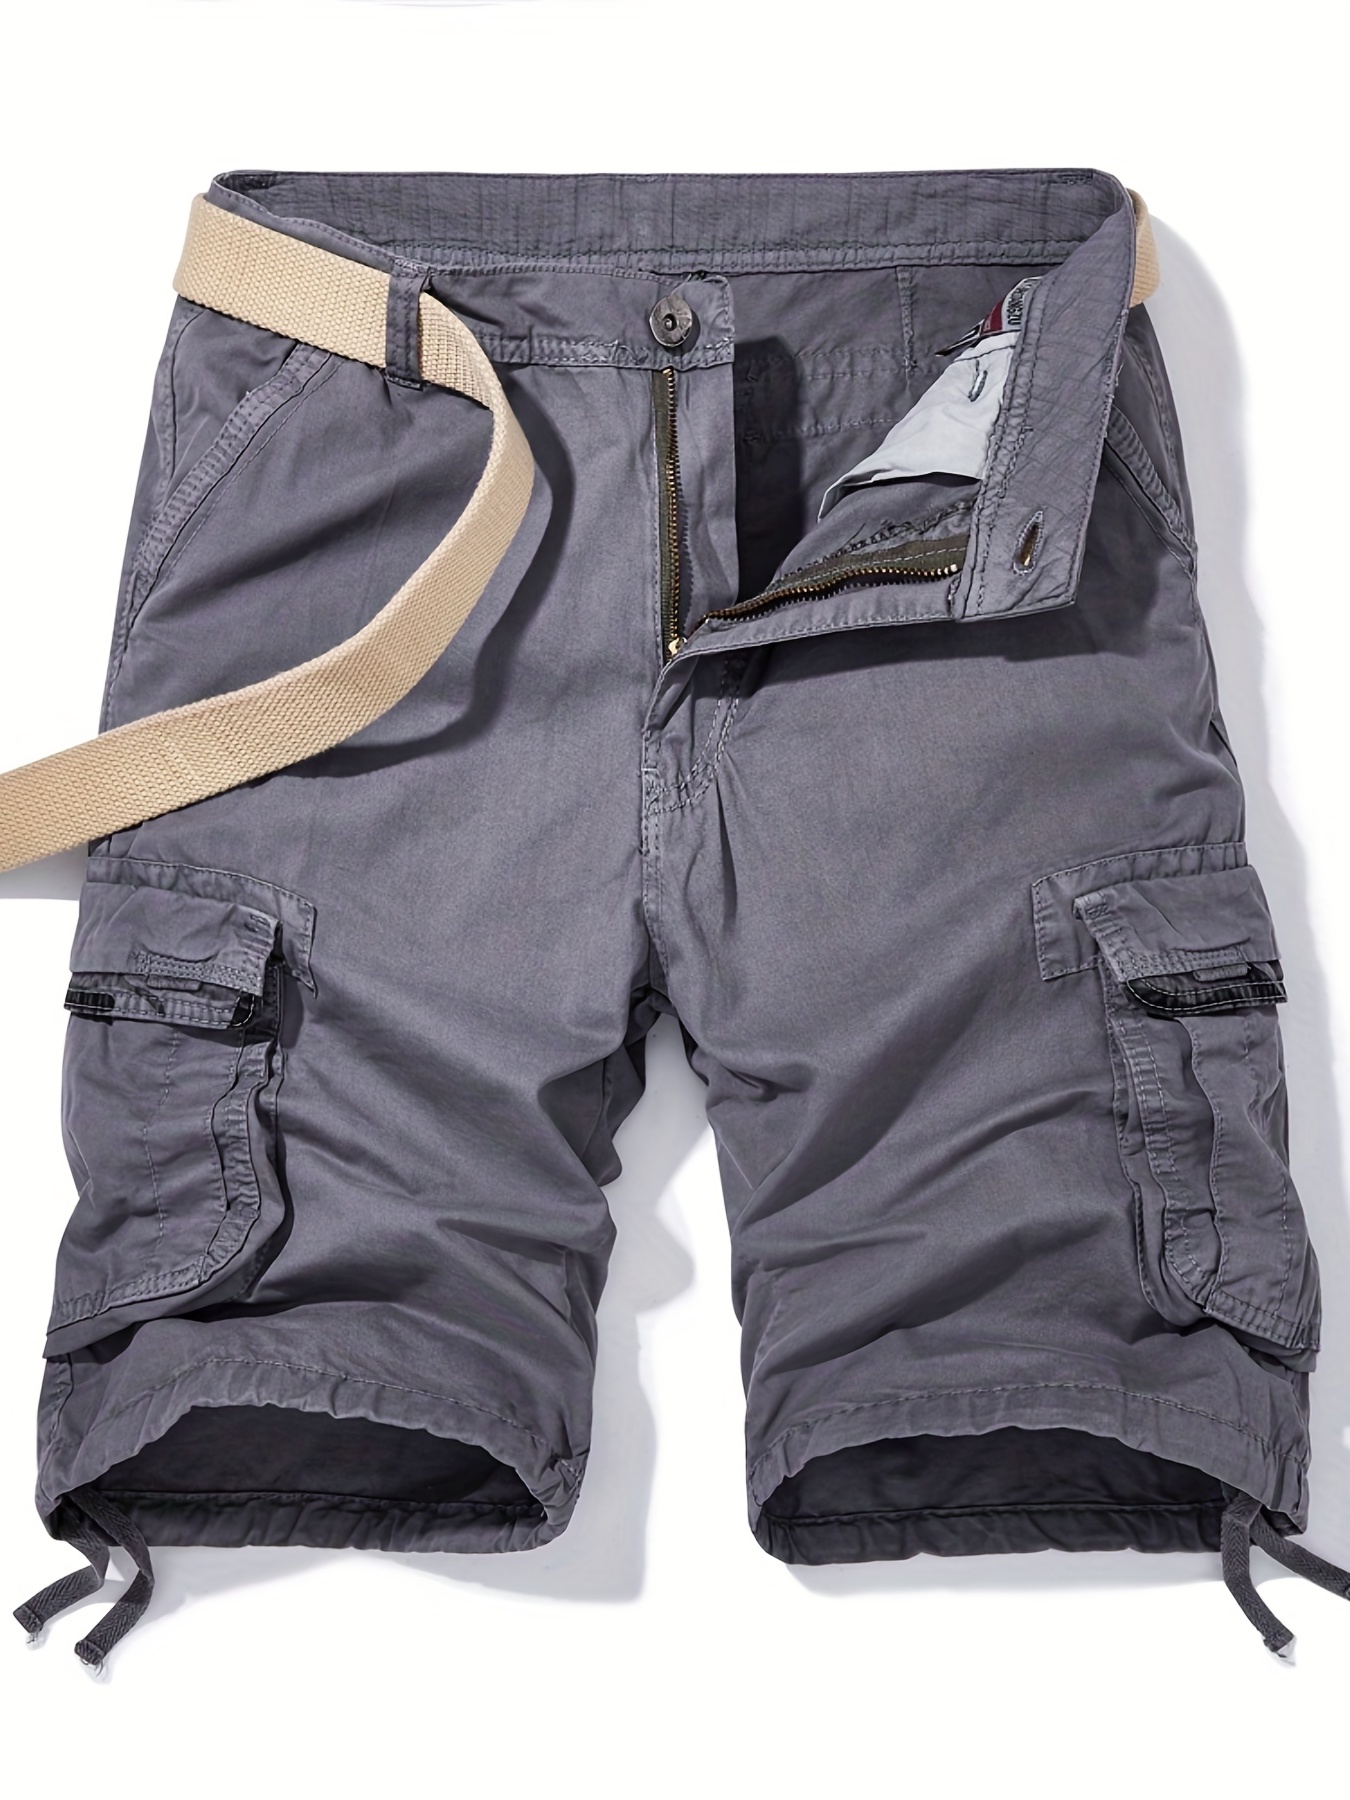 Men's Waterproof Drawstring Flap Pocket Cargo Shorts, Anti-wear Outdoor Work Pants For Fishing, Hiking